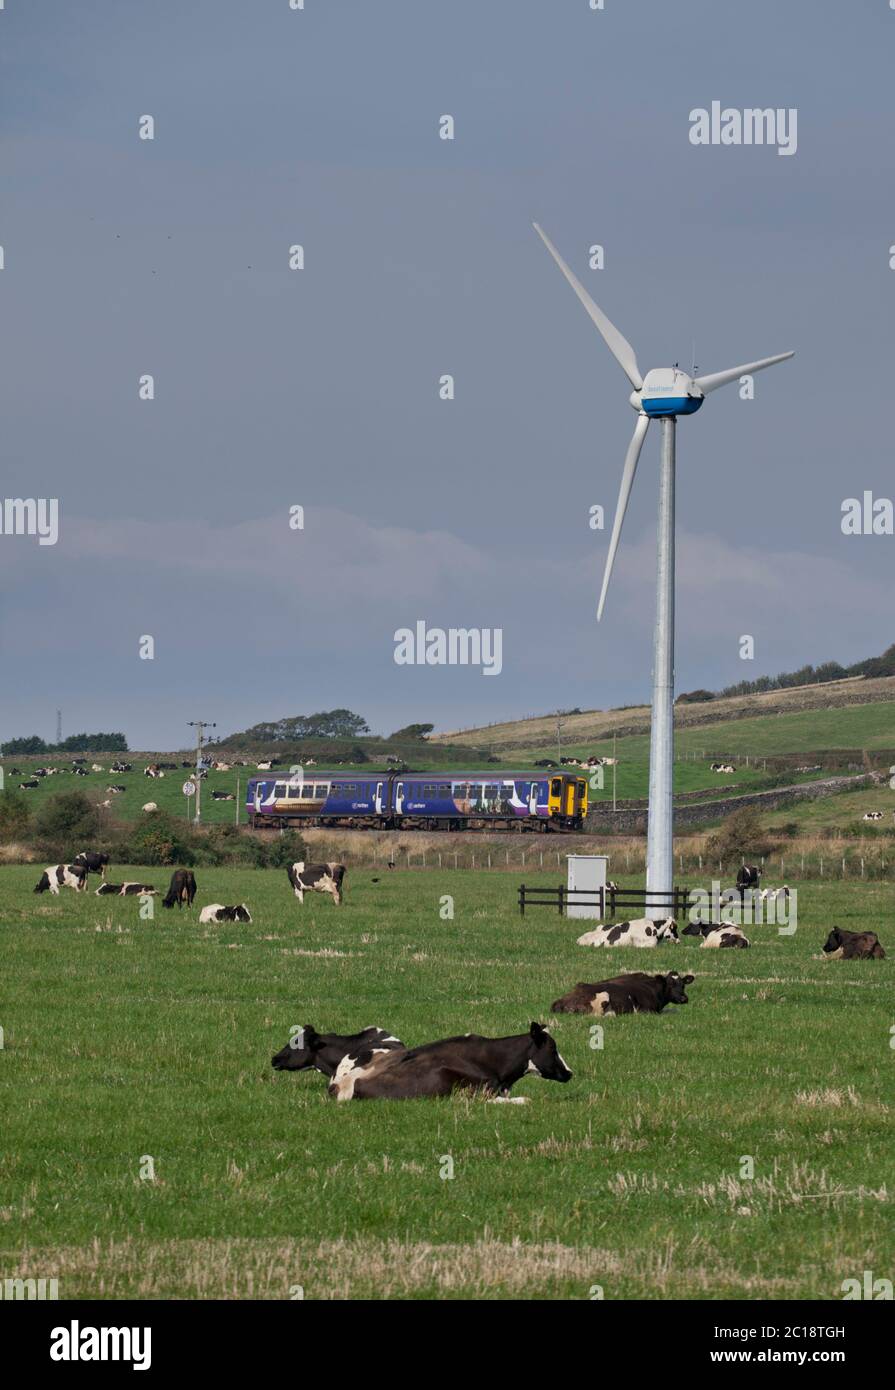 Treno sprinter classe 156 della ferrovia settentrionale che passegna una turbina eolica e vacche da latte a Haverigg sulla linea ferroviaria costiera della Cumbria Foto Stock